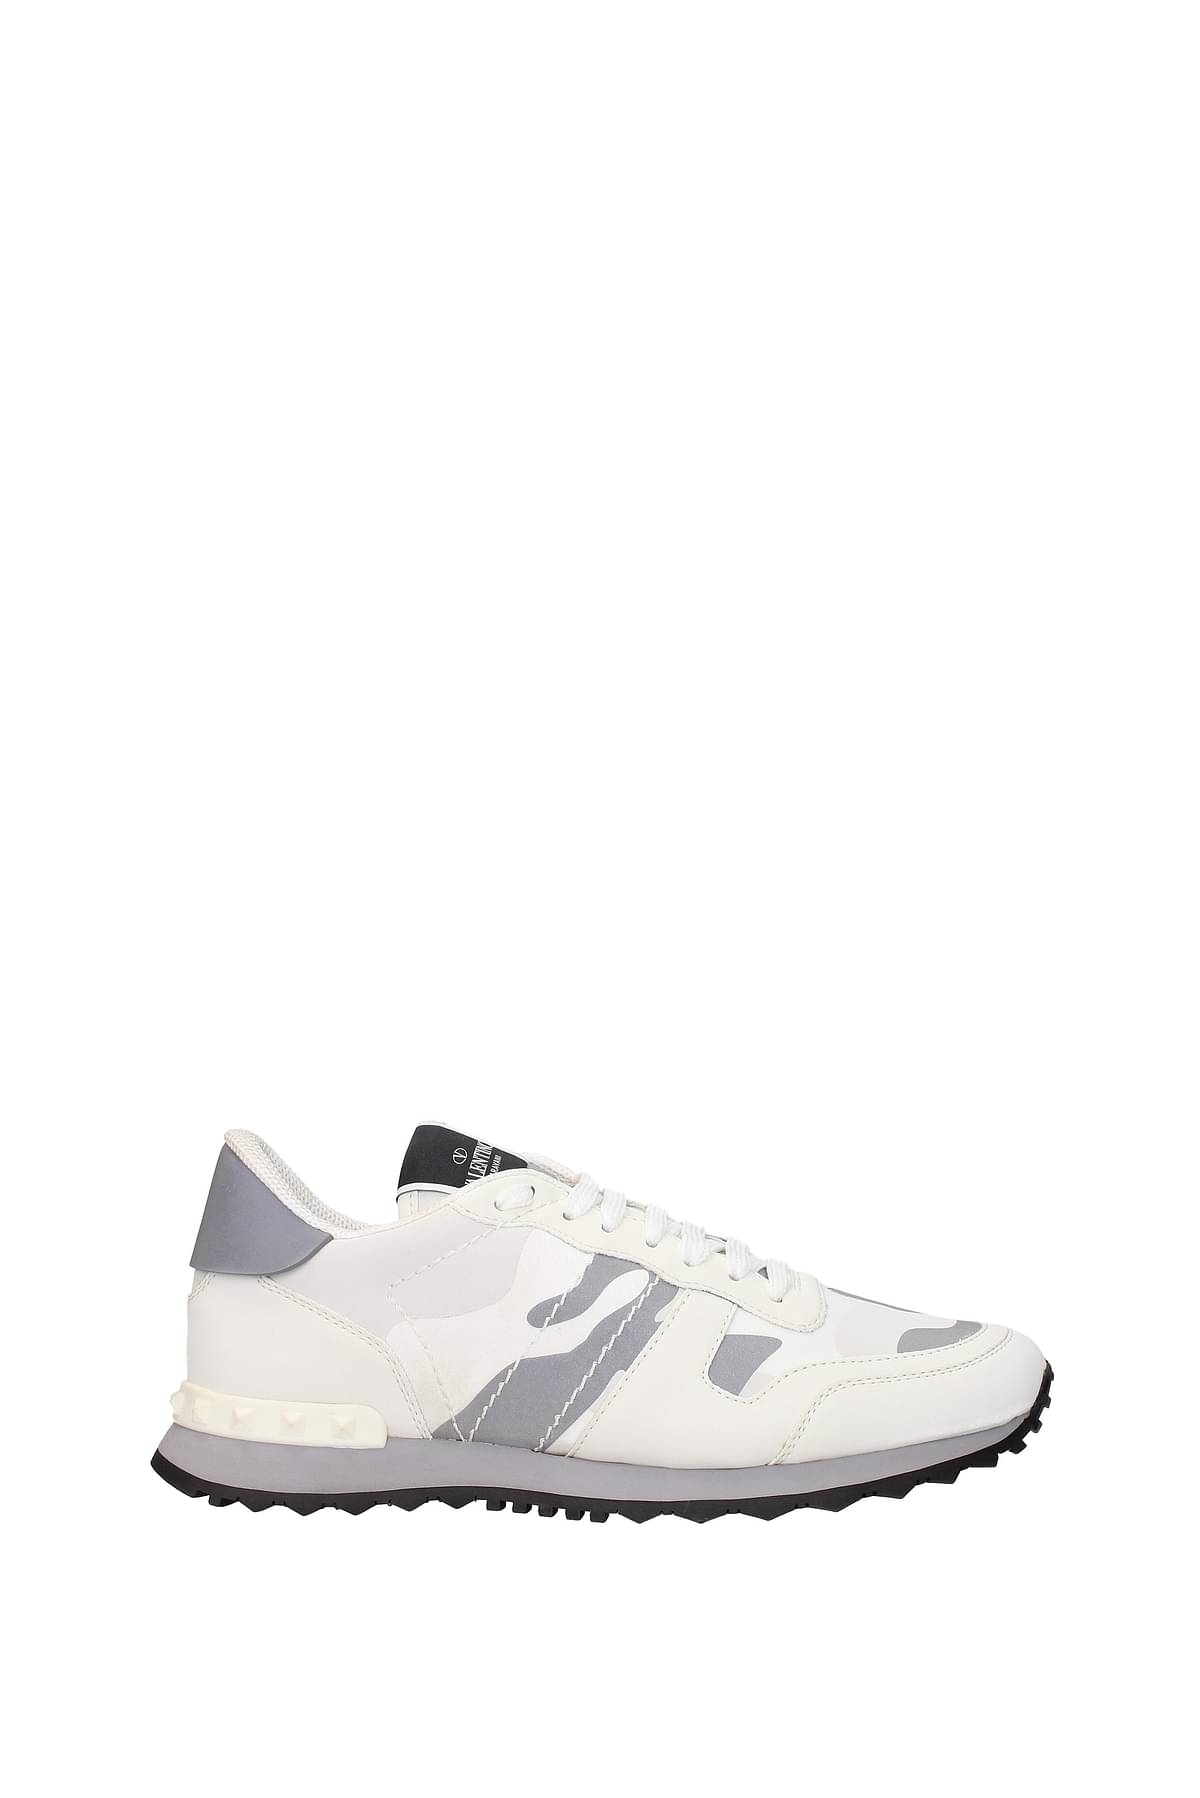 Valentino Sneakers Men Fabric White Silver